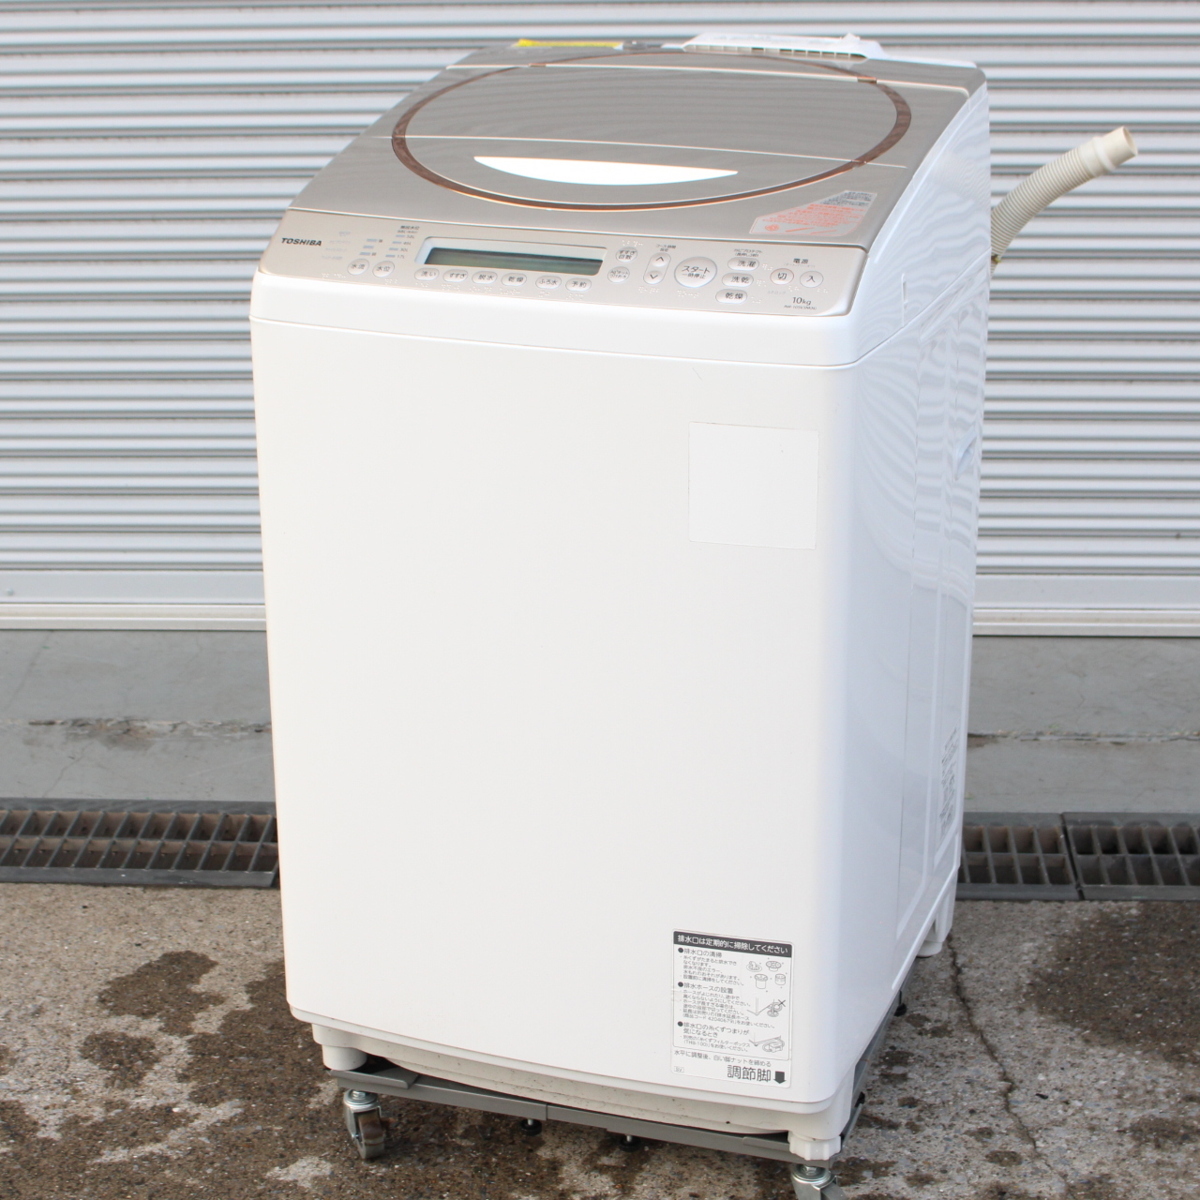 東京都町田市にて 東芝 洗濯機 AW-10SV3M 2015年製 を出張買取させて頂きました。